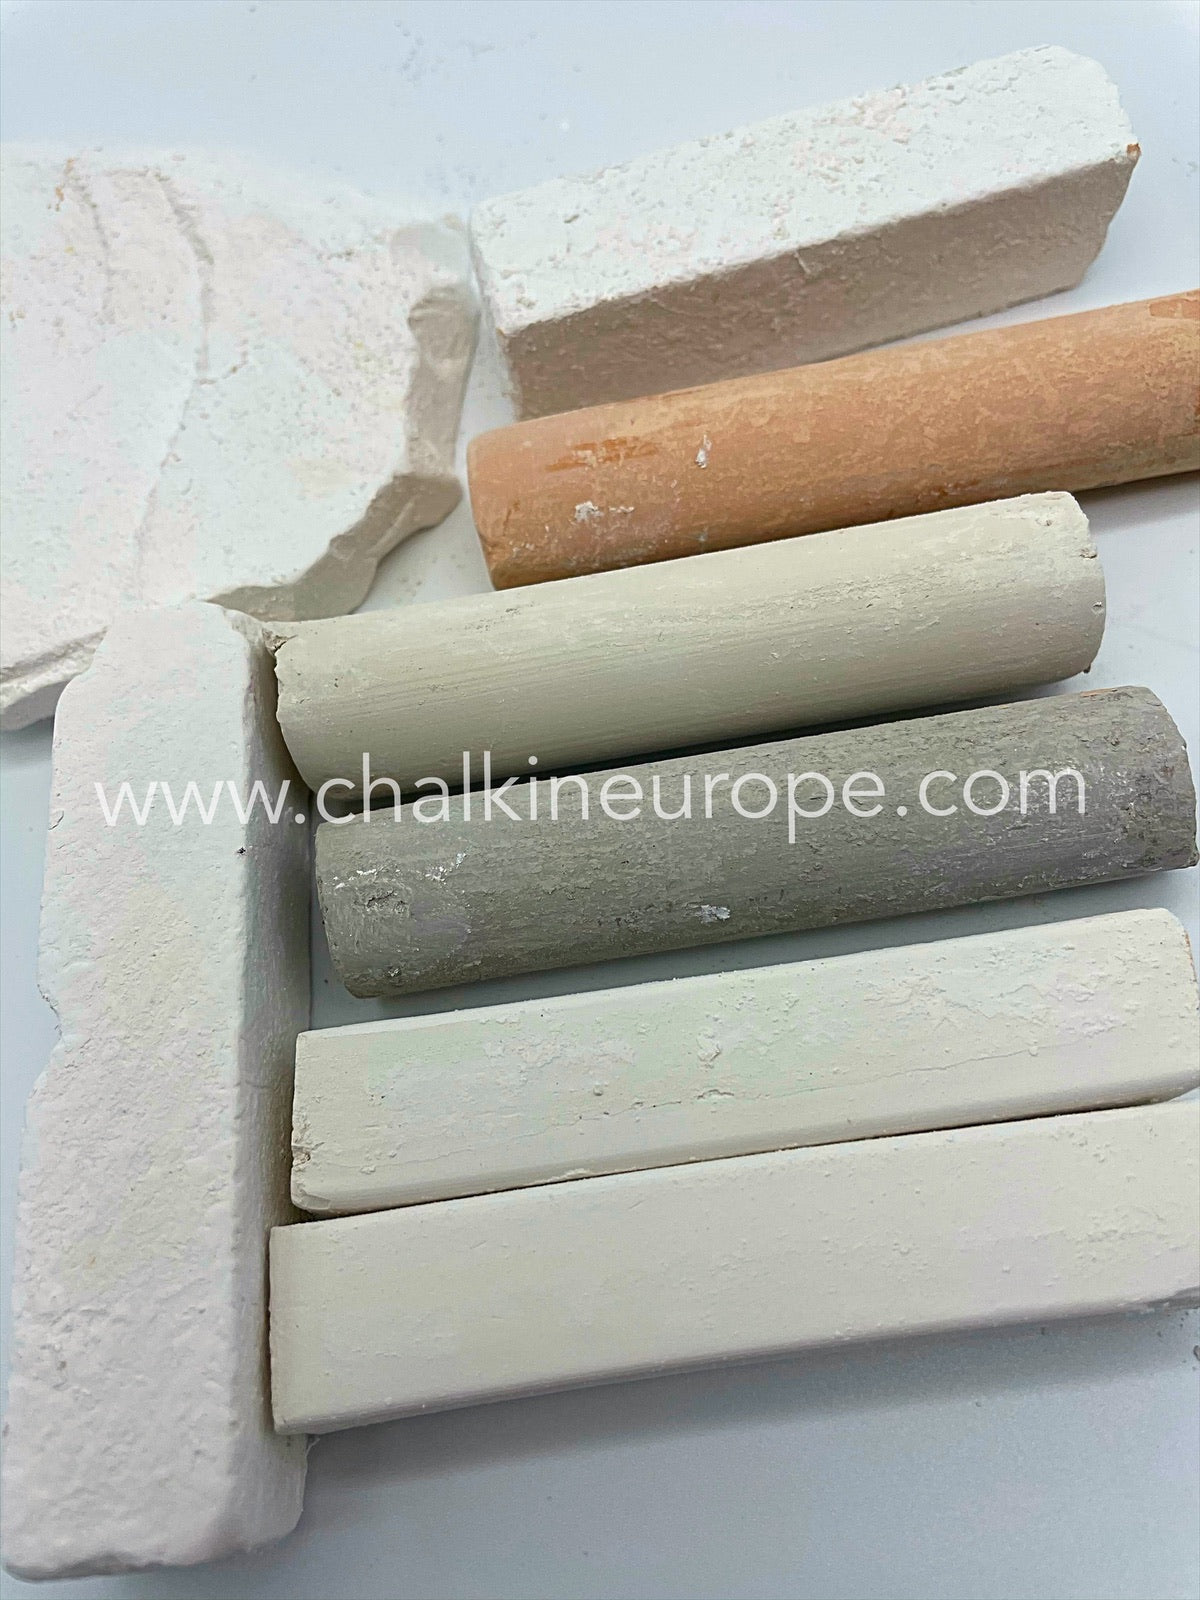 Edible chalk - Chalkineurope